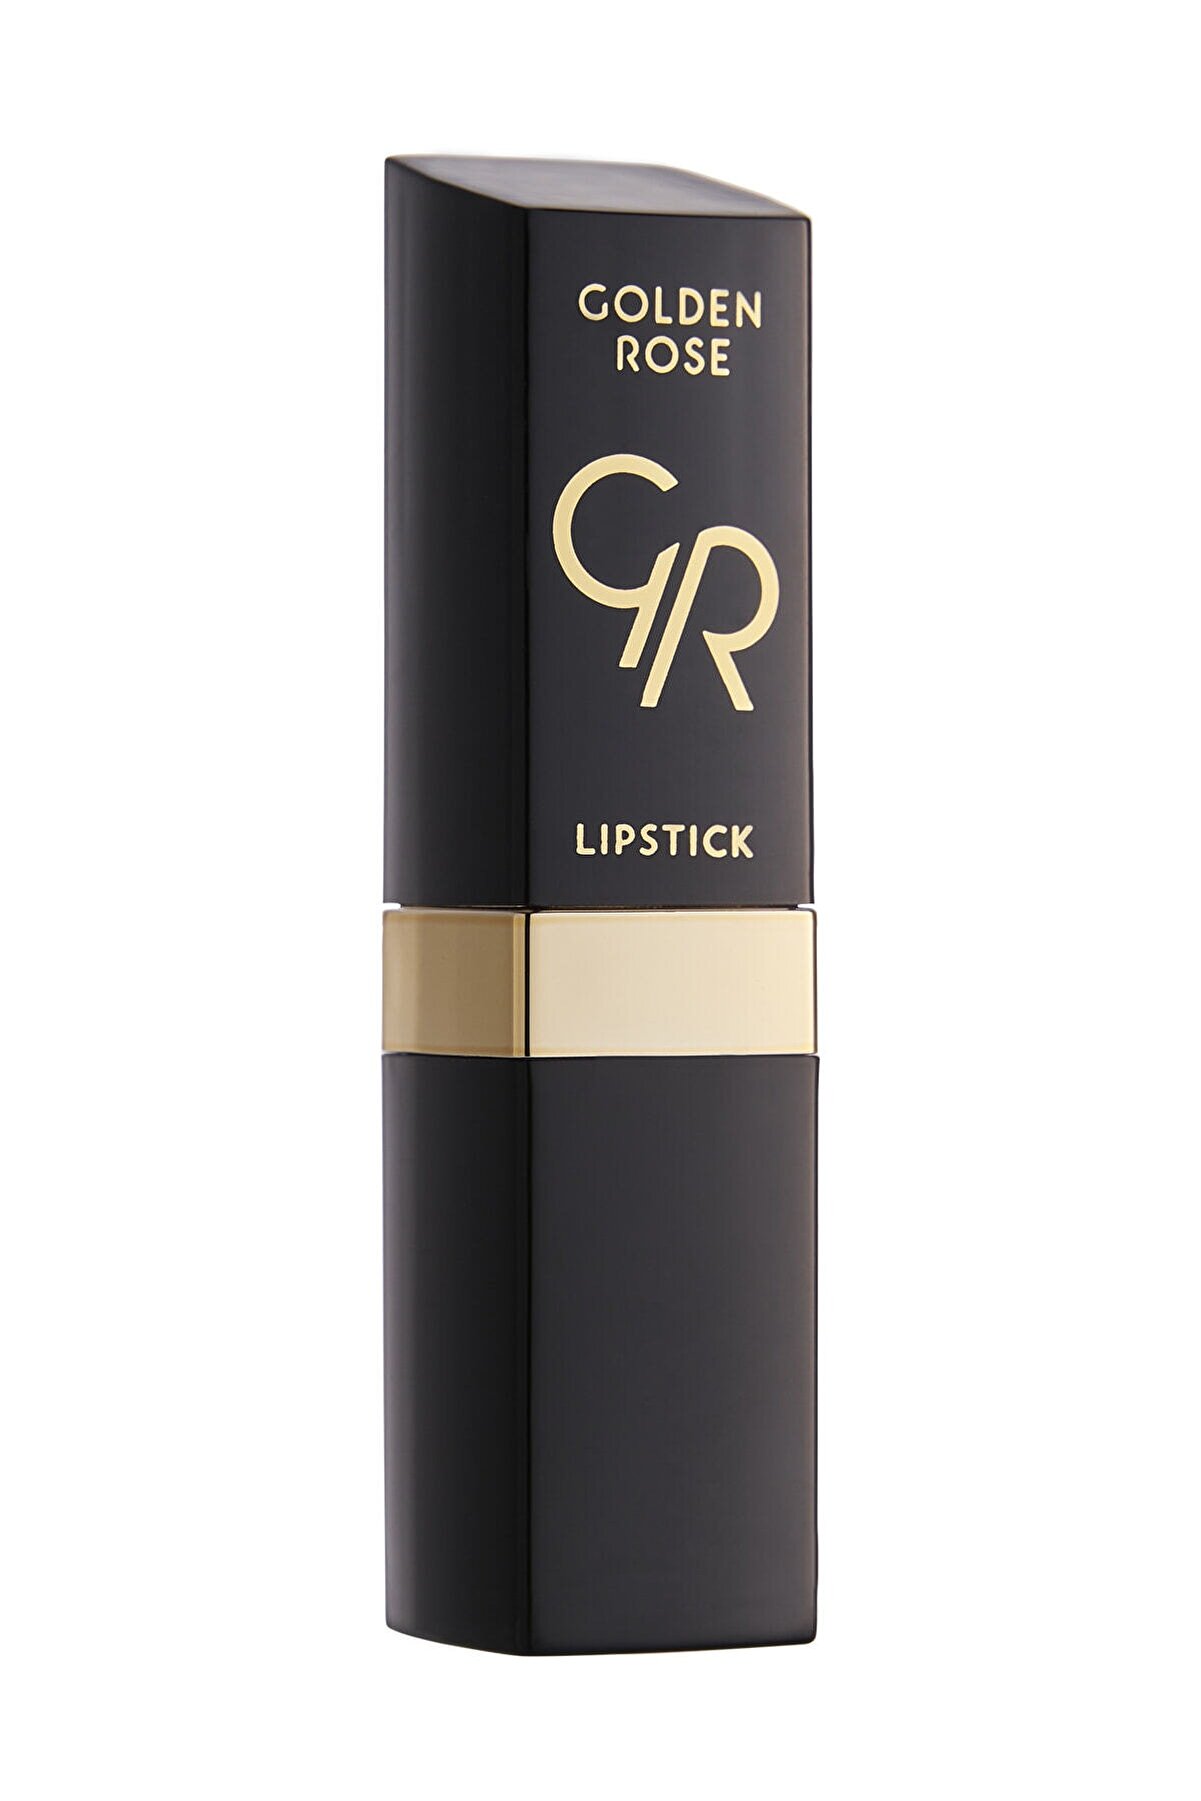 رژلب جامد مدل Lipstick رنگ صورتی شماره 141 گلدن رز Golden Rose شیکولات